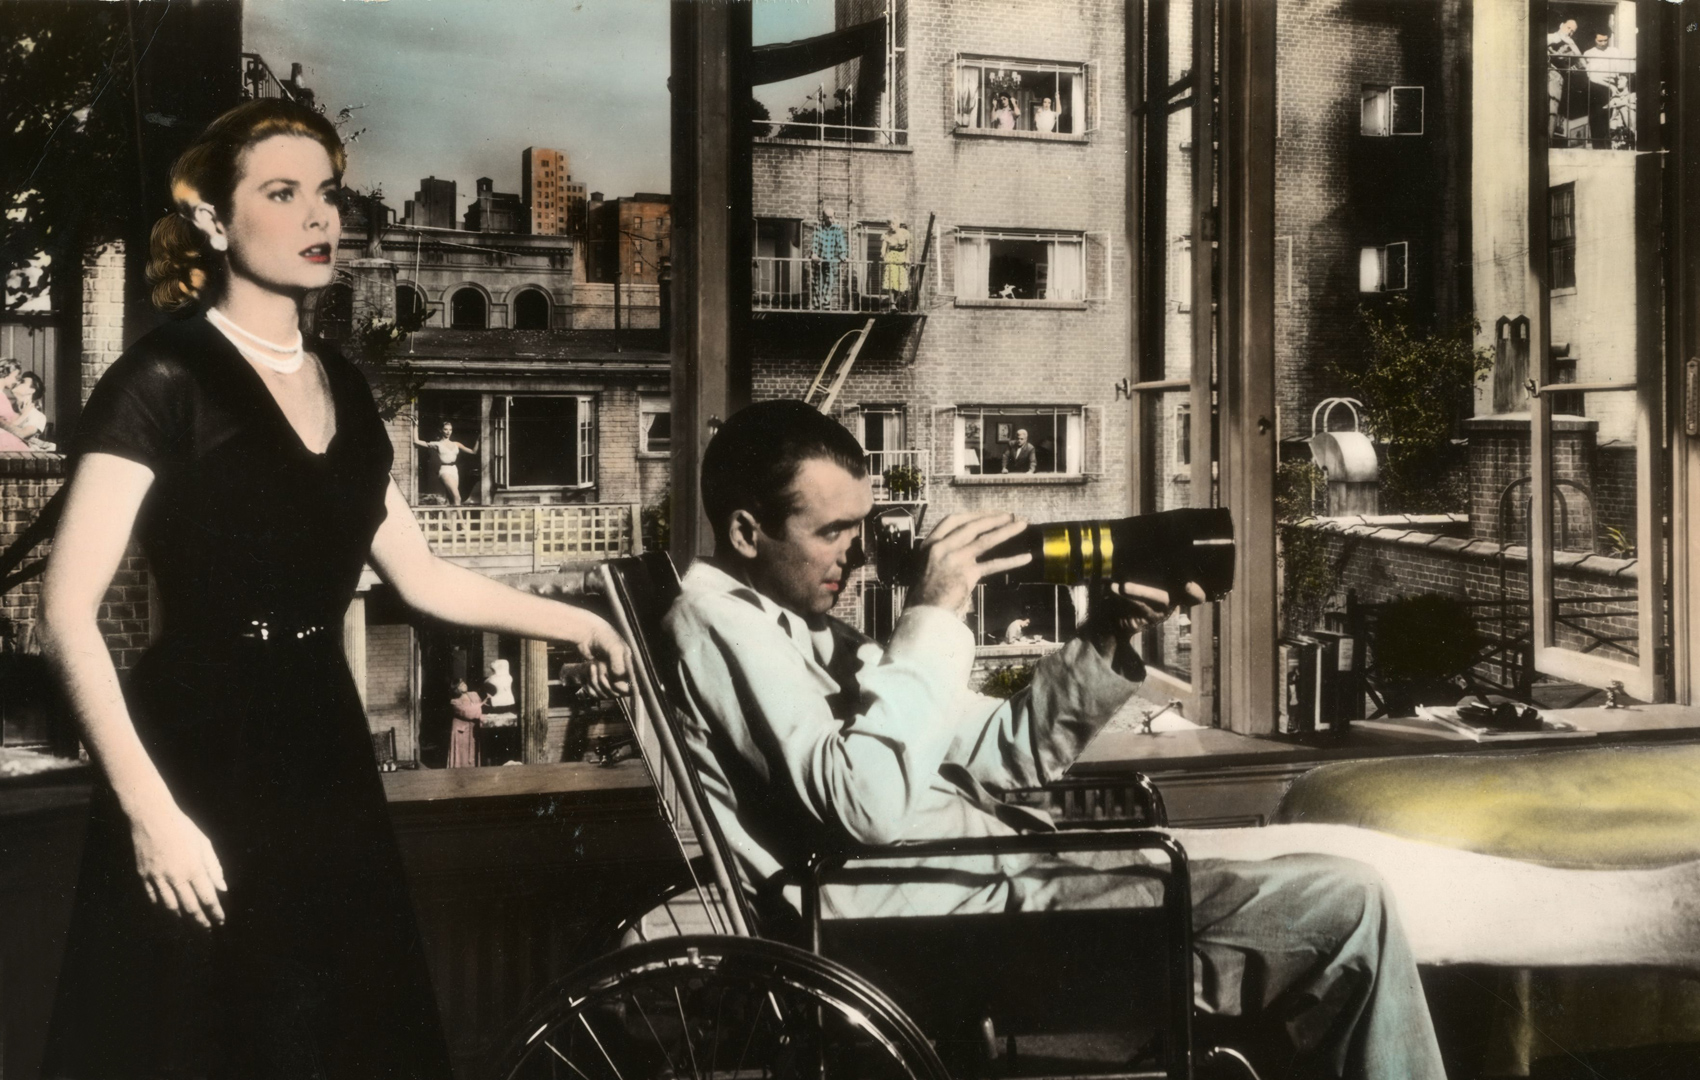 Frau mit erschrockenem Blick links im Bild hat eine Hand am Schiebegriff eines Rollstuhls. Darin sitzt ein Mann mit einem Gipsbein. In der Hand hält er eine Fotoapparat mit Teleobjektiv. Im Hintergrund ist eine Häuserfront mit Fenstern zu sehen.